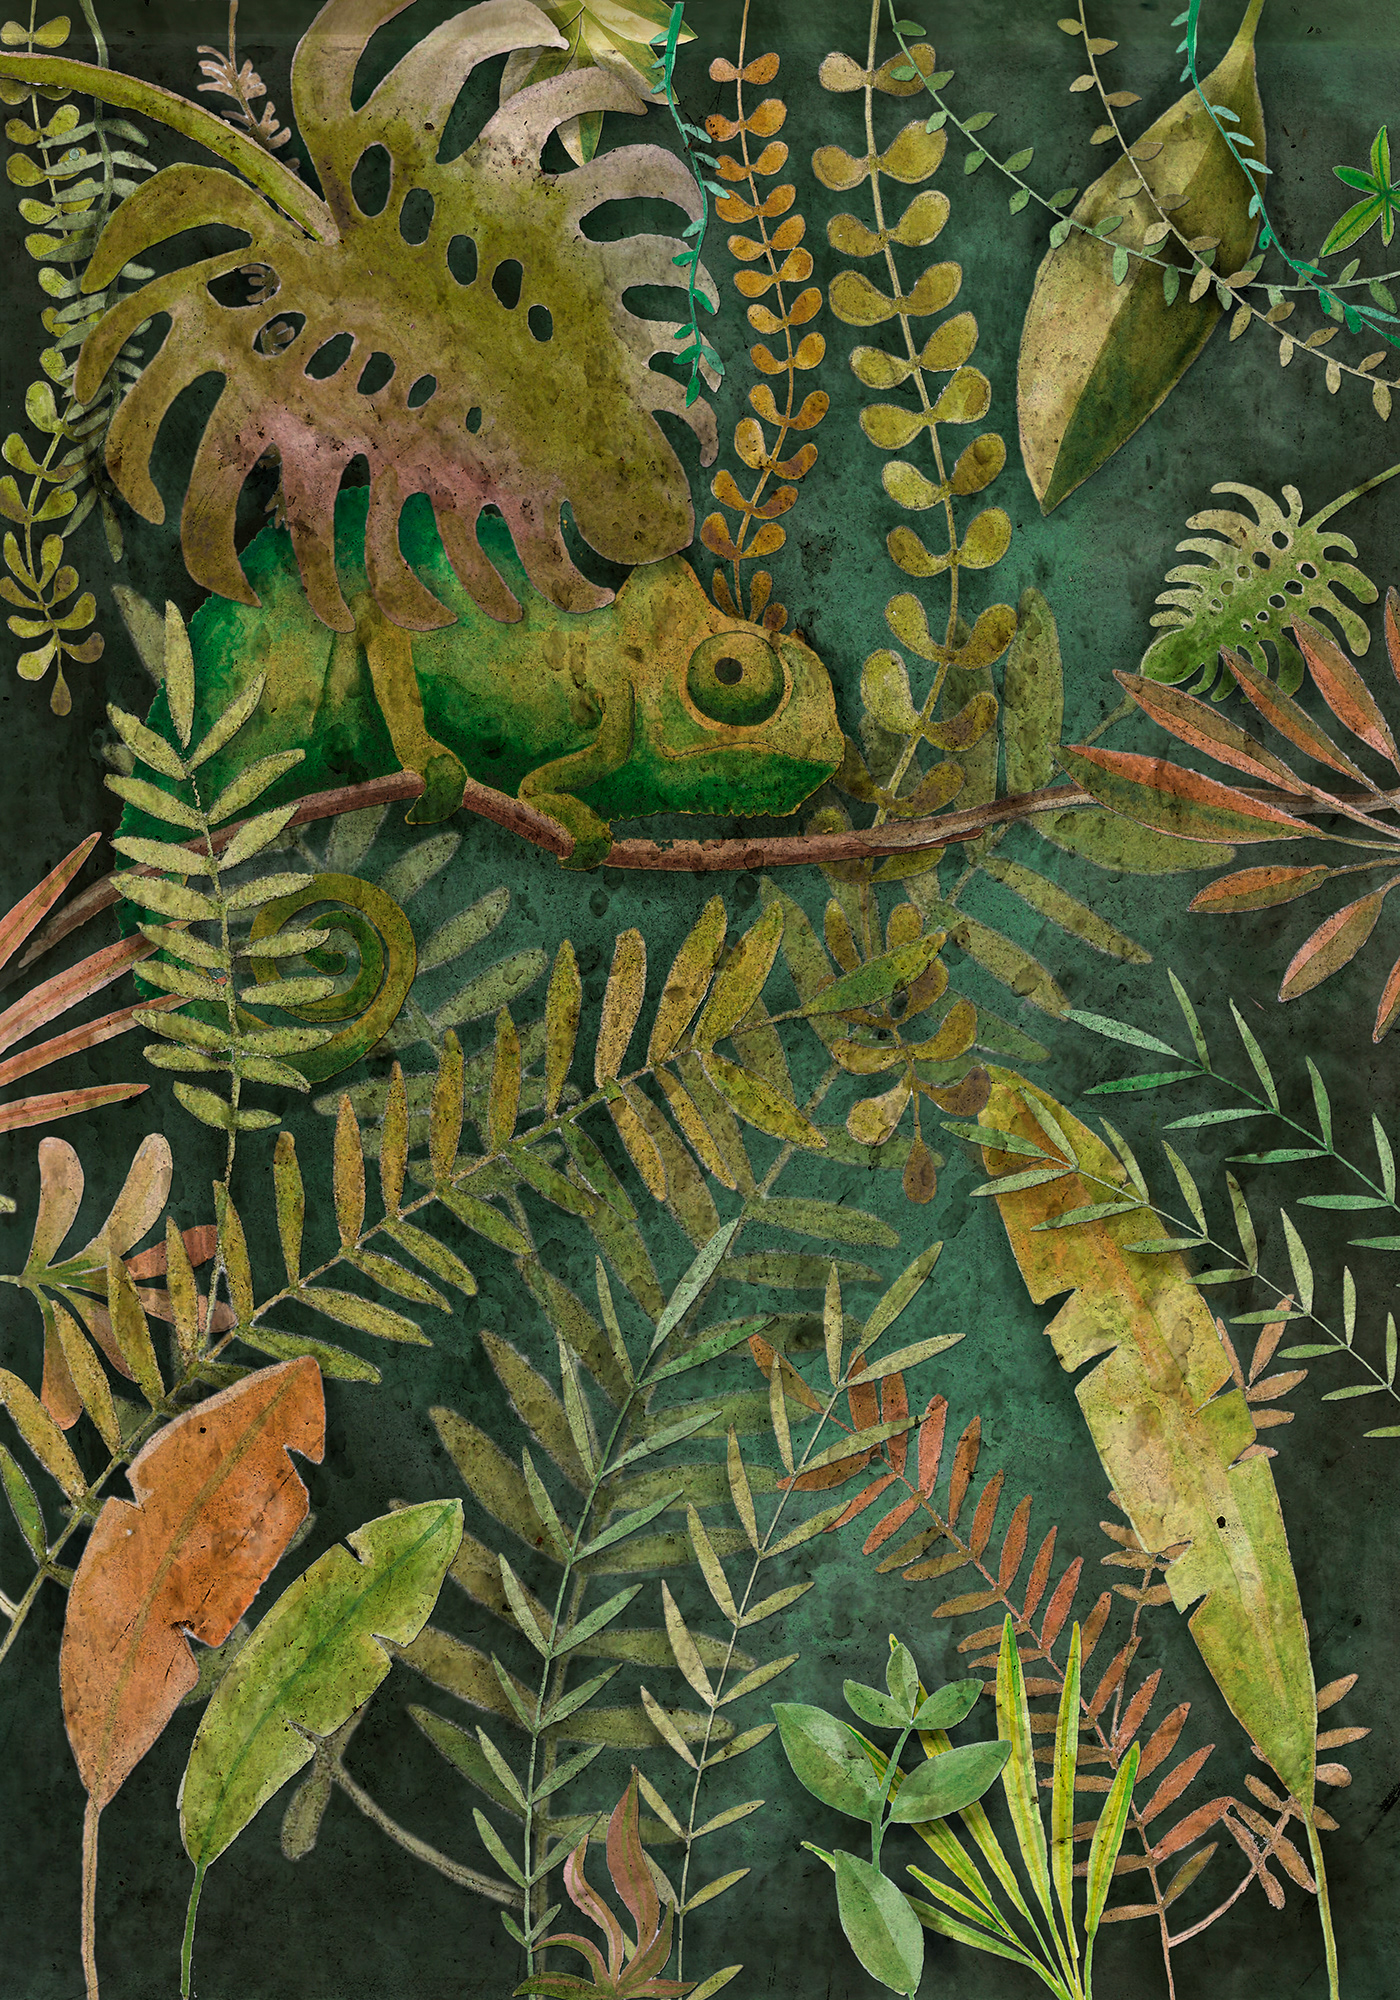 child illustration illustrazione infanzia chameleon camaleonte foresta tropicale mimetismo